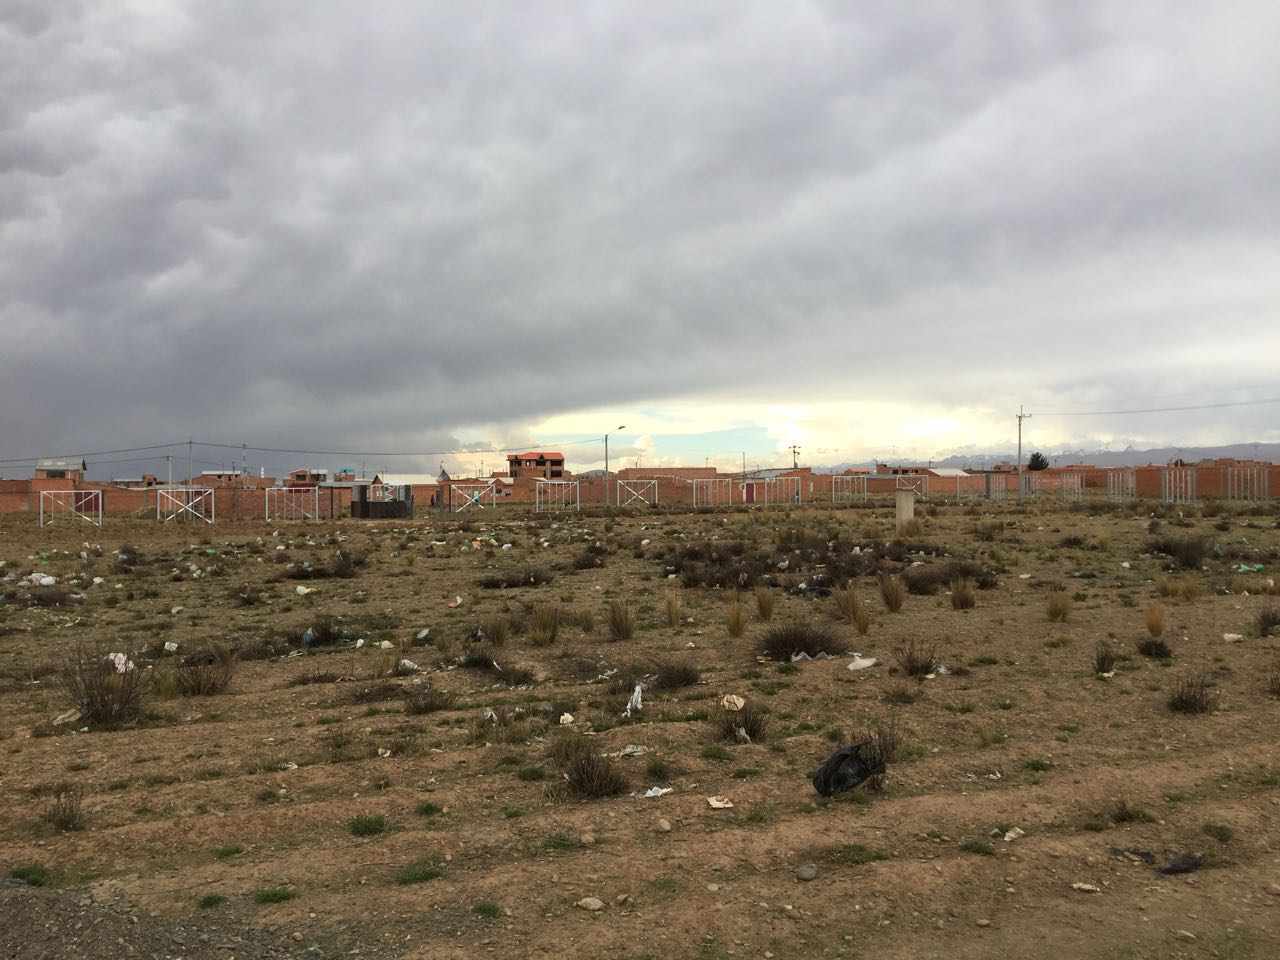 Terreno en VentaAv. G esq. calle 3.Urbanizacion Inti Raymi, zona Tilata distrito 7, camino a Viacha    Foto 5